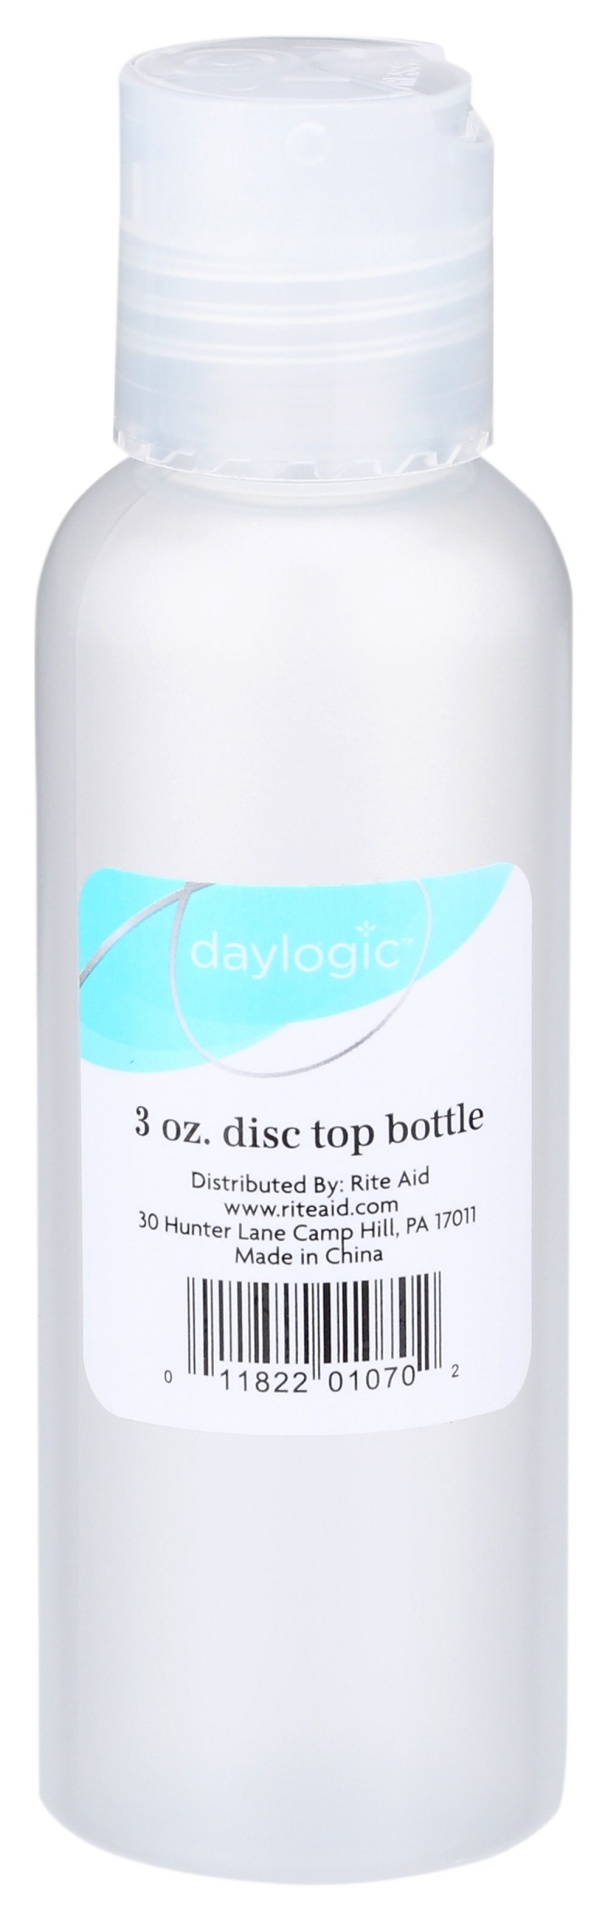 slide 1 of 1, Daylogic Disc Top Bottle, 3 oz